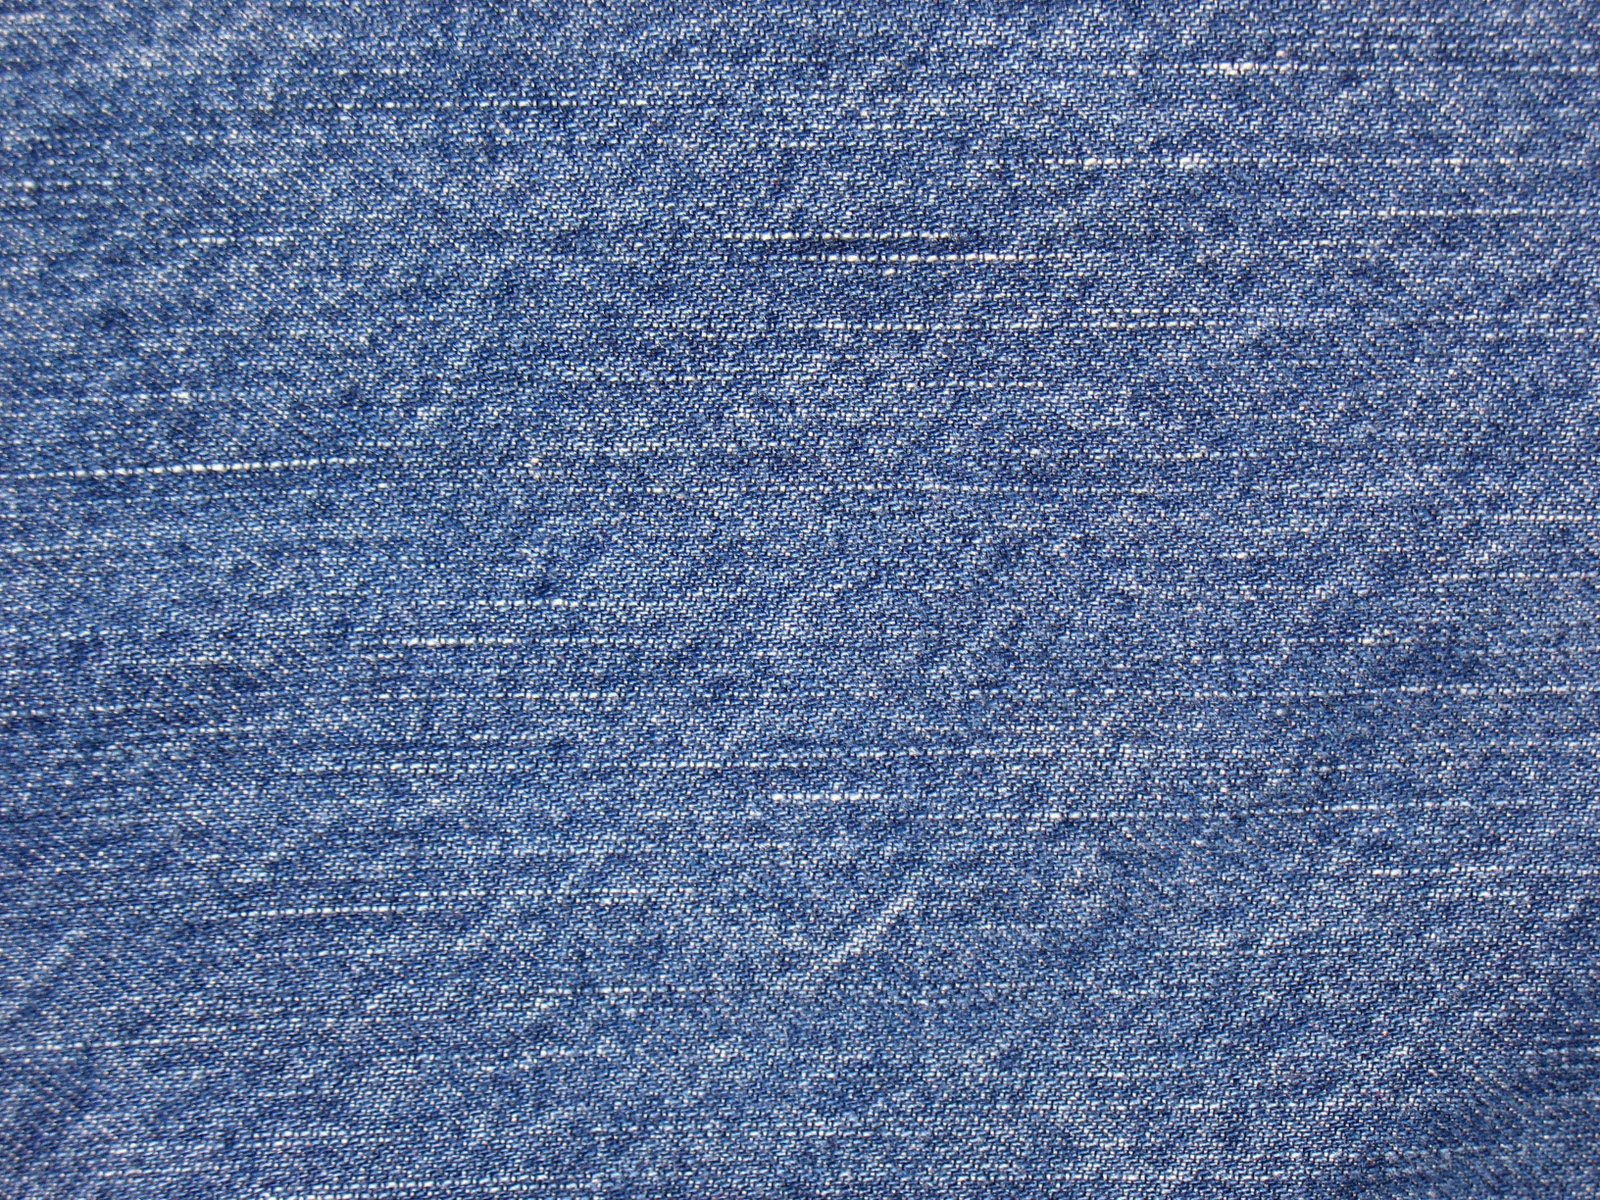 Текстура голубой джинсовой ткани, скачать фото, фон, джинсы, джинса, blue jeans texture, background